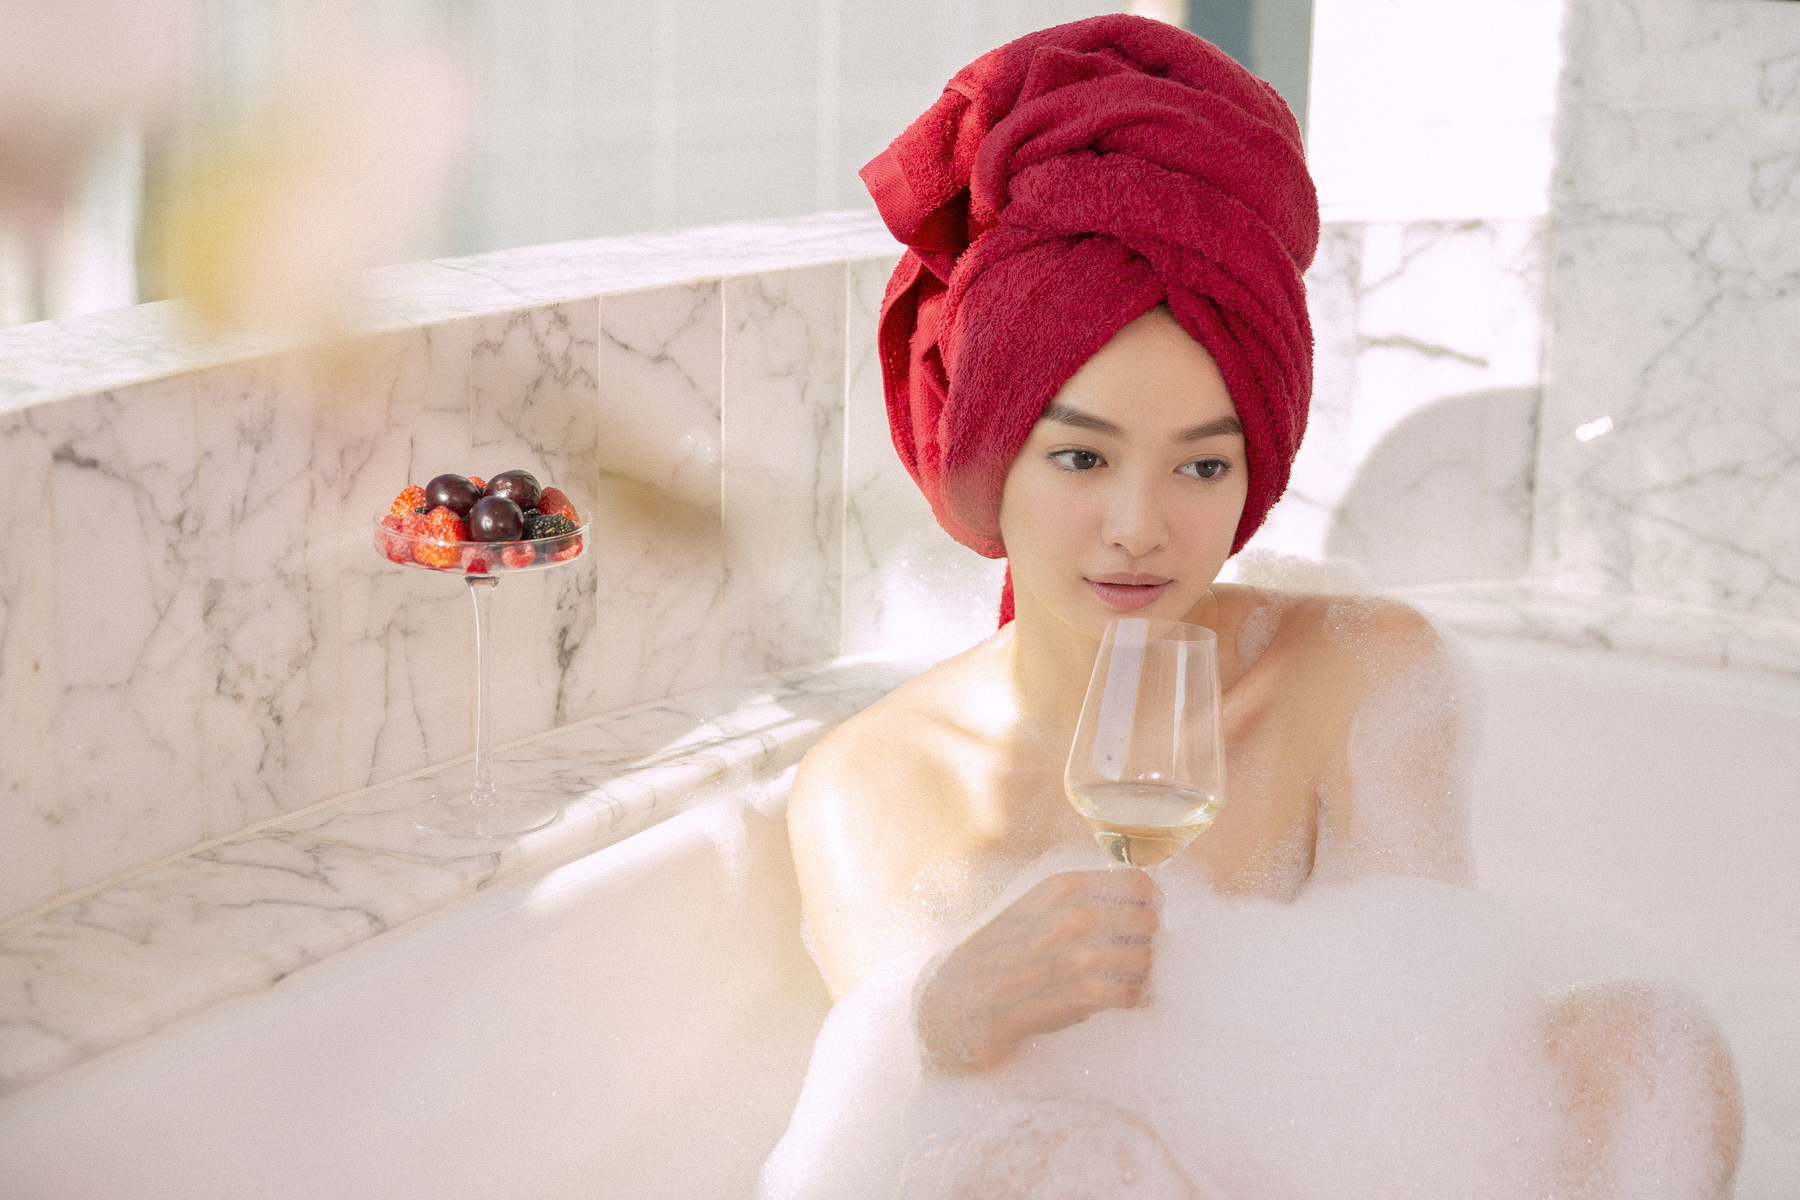 Kaity Nguyễn gợi cảm khoe khéo body hấp dẫn với bọt trắng trong bồn tắm